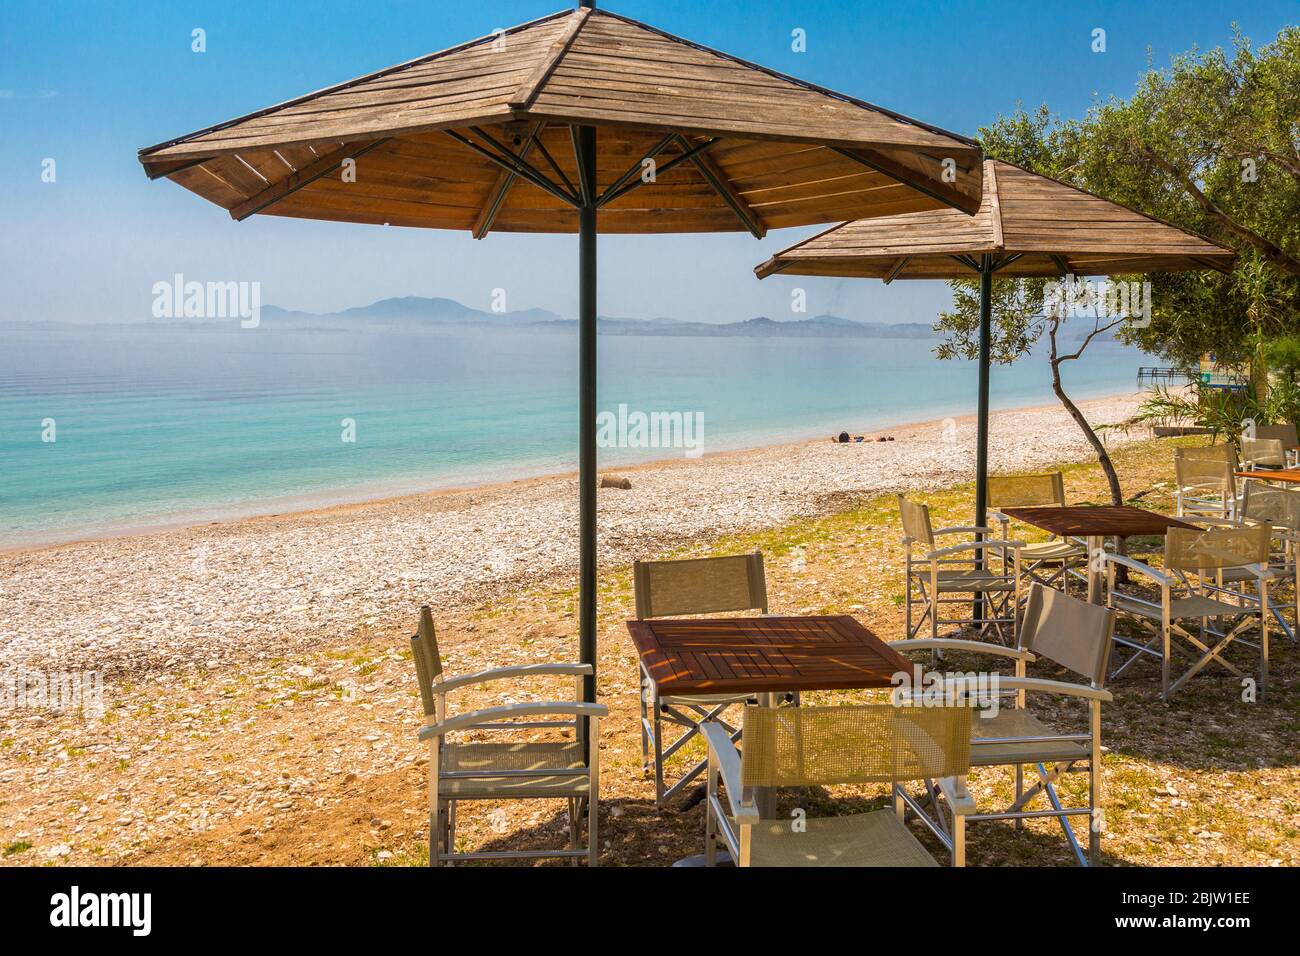 Sun umbrellas and seating at Barbati Beach, Corfu, Greece Stock Photo